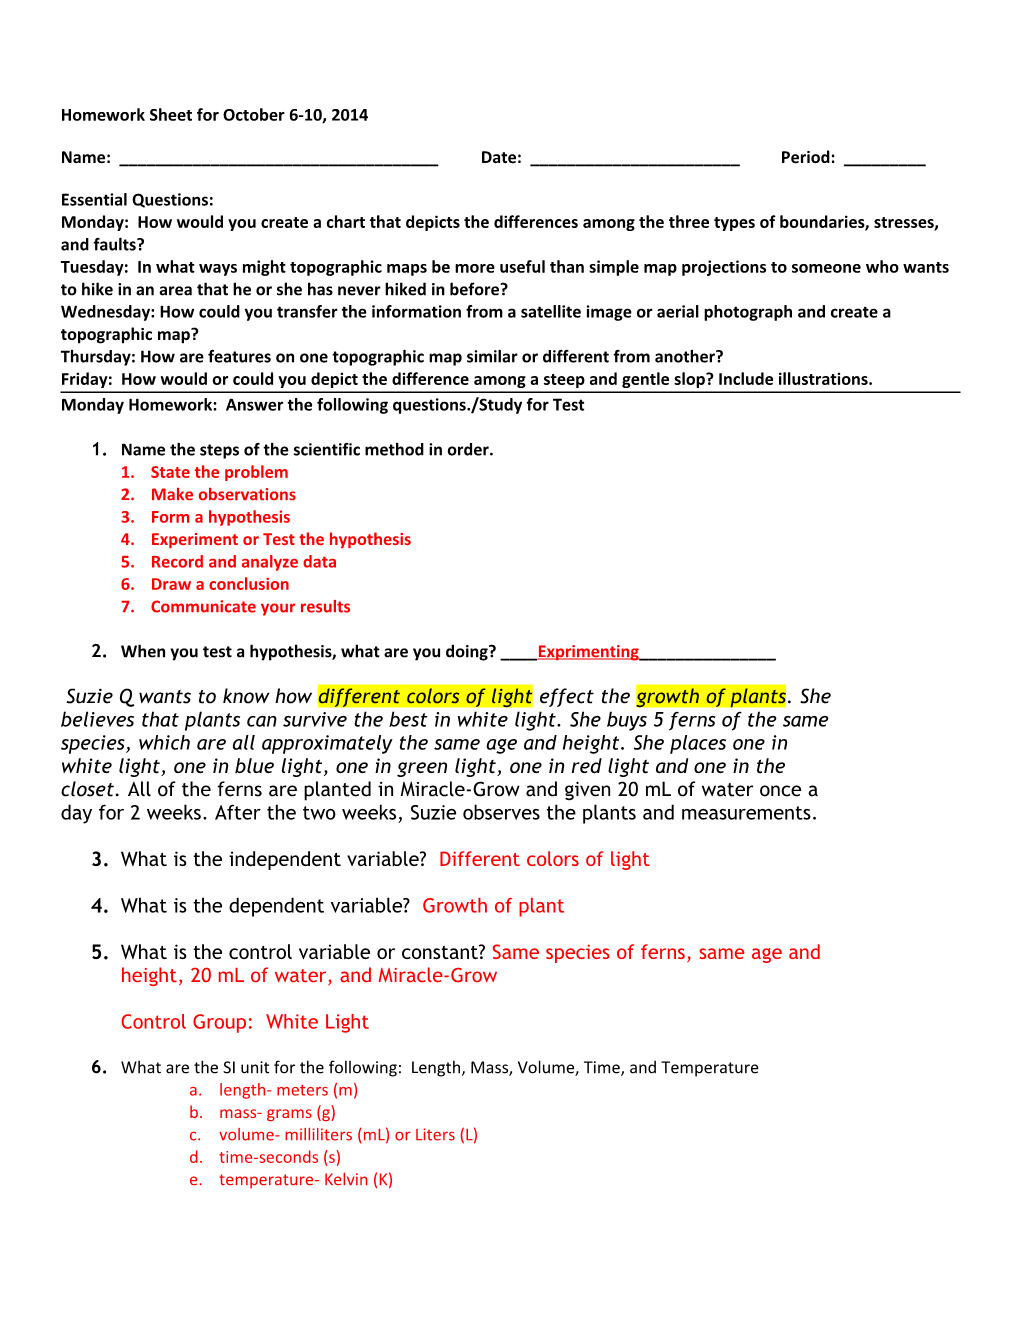 Homework Sheet for October 6-10, 2014